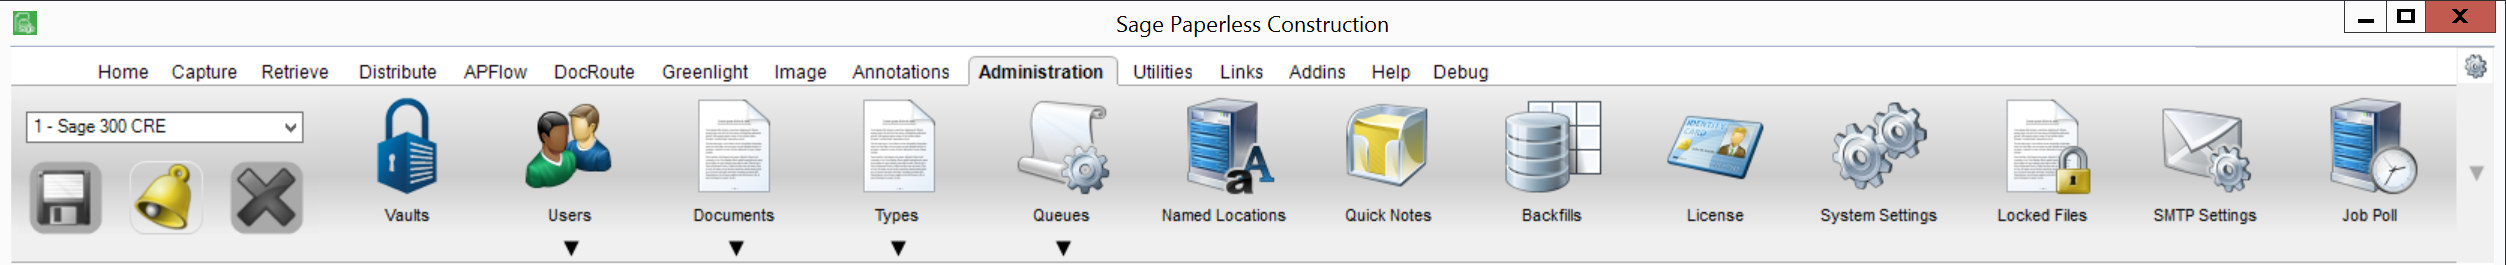 SagePaperlessToolbar